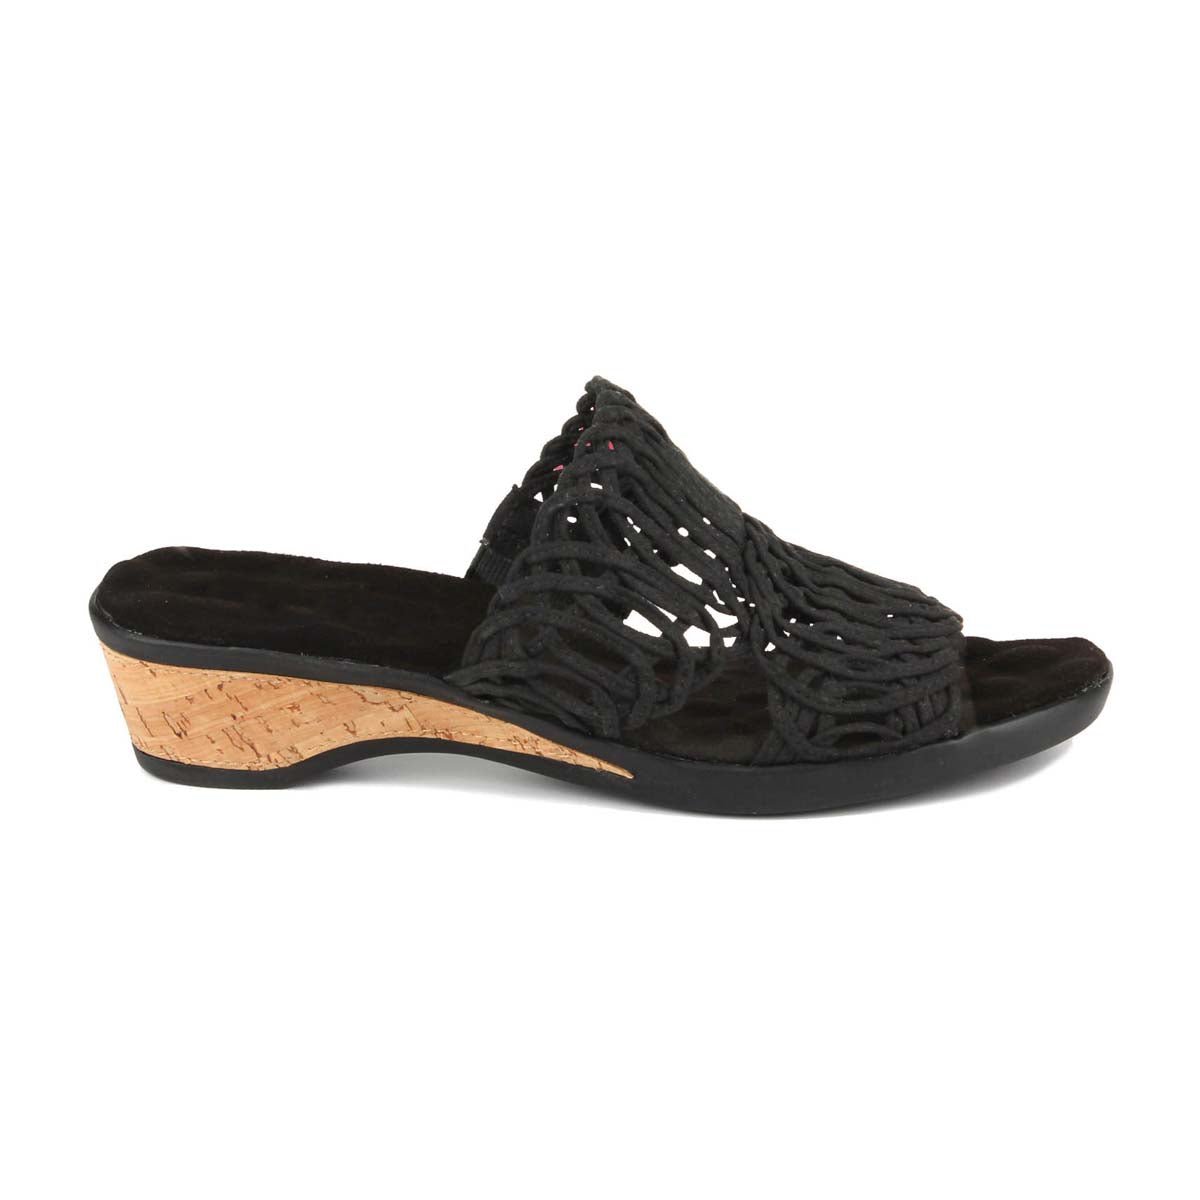 ROS HOMMERSON KUDOS WOMEN'S SLIP-ON SANDAL IN BLACK - TLW Shoes